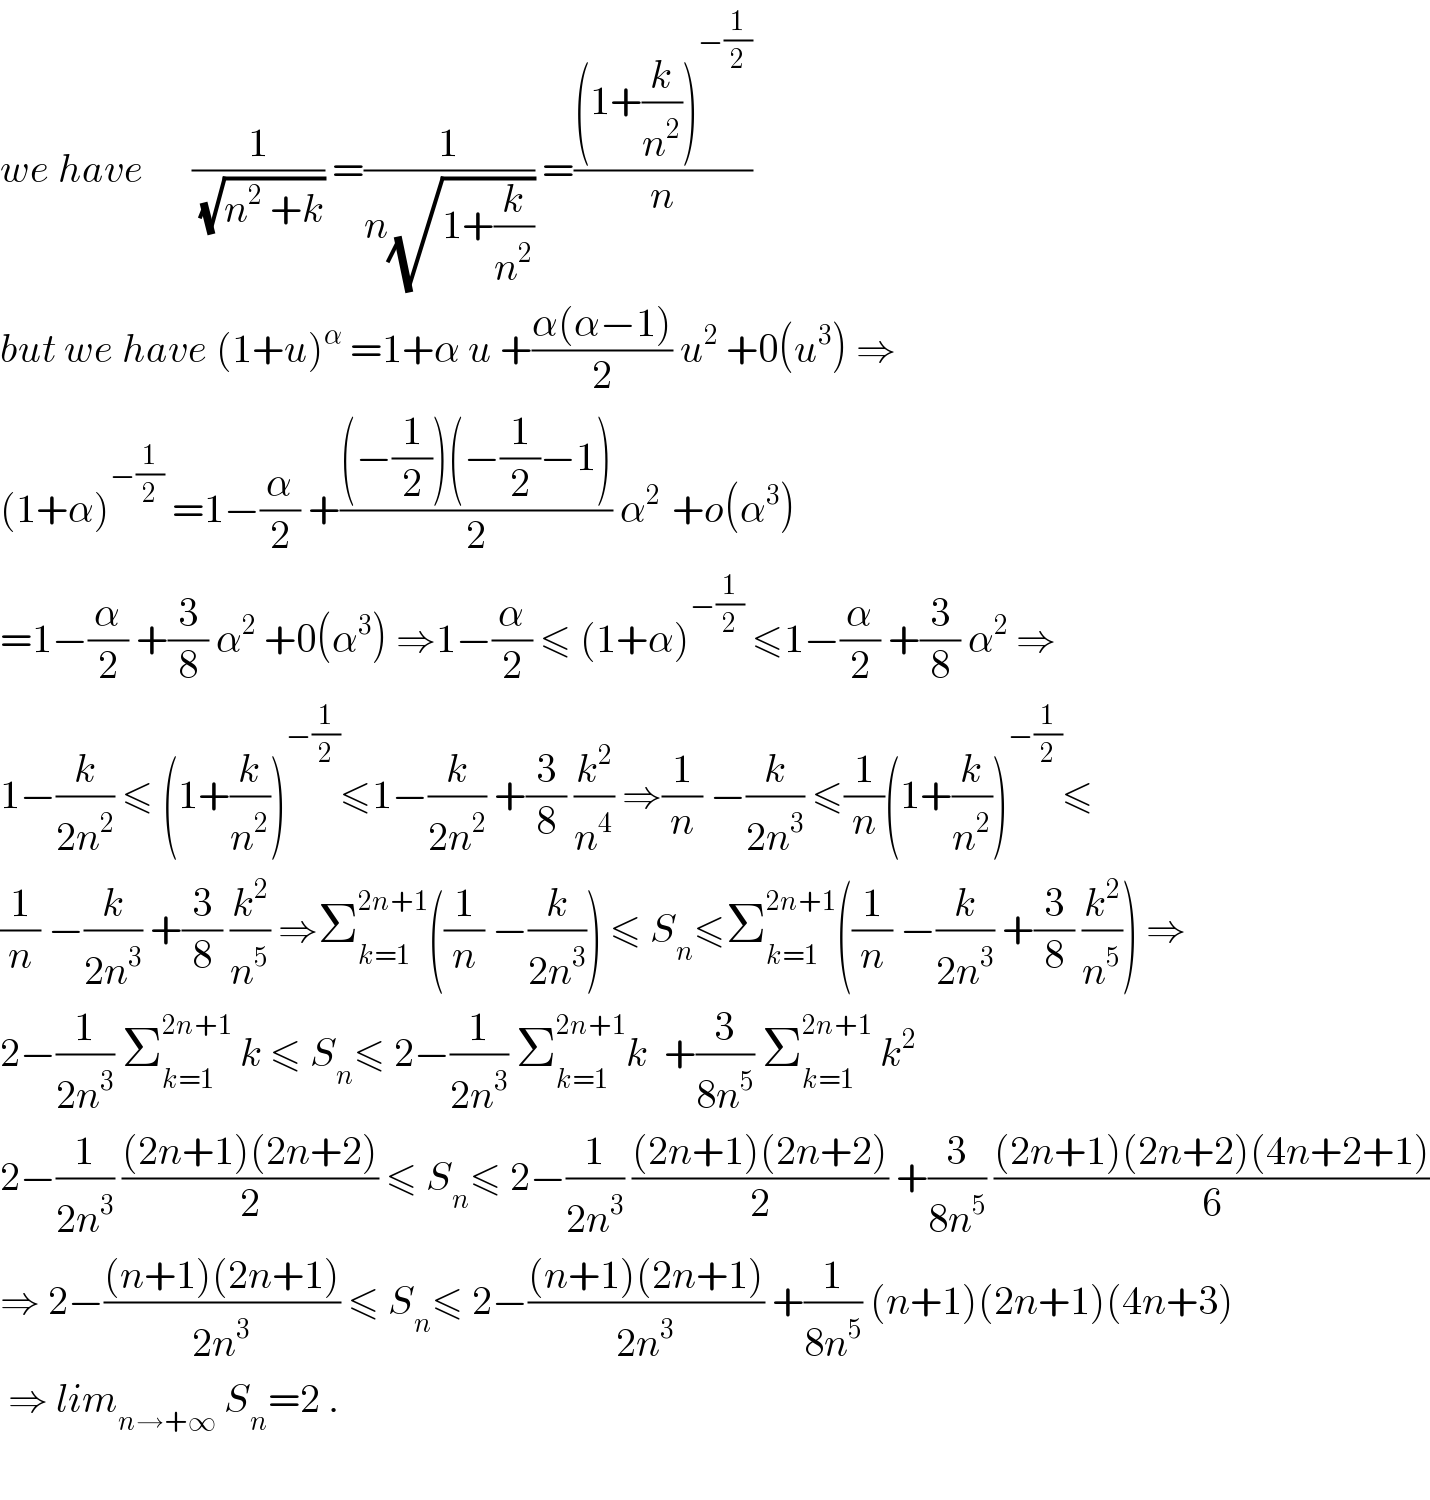 we have      (1/(√(n^2  +k))) =(1/(n(√(1+(k/n^2 ))))) =(((1+(k/n^2 ))^(−(1/2)) )/n)  but we have (1+u)^α  =1+α u +((α(α−1))/2) u^2  +0(u^3 ) ⇒  (1+α)^(−(1/2))  =1−(α/2) +(((−(1/2))(−(1/2)−1))/2) α^(2 )  +o(α^3 )  =1−(α/2) +(3/8) α^2  +0(α^3 ) ⇒1−(α/2) ≤ (1+α)^(−(1/2))  ≤1−(α/2) +(3/8) α^2  ⇒  1−(k/(2n^2 )) ≤ (1+(k/n^2 ))^(−(1/2)) ≤1−(k/(2n^2 )) +(3/8) (k^2 /n^4 ) ⇒(1/n) −(k/(2n^3 )) ≤(1/n)(1+(k/n^2 ))^(−(1/2)) ≤  (1/n) −(k/(2n^3 )) +(3/8) (k^2 /n^5 ) ⇒Σ_(k=1) ^(2n+1) ((1/n) −(k/(2n^3 ))) ≤ S_n ≤Σ_(k=1) ^(2n+1) ((1/n) −(k/(2n^3 )) +(3/8) (k^2 /n^5 )) ⇒  2−(1/(2n^3 )) Σ_(k=1) ^(2n+1)  k ≤ S_n ≤ 2−(1/(2n^3 )) Σ_(k=1) ^(2n+1) k  +(3/(8n^5 )) Σ_(k=1) ^(2n+1)  k^2   2−(1/(2n^3 )) (((2n+1)(2n+2))/2) ≤ S_n ≤ 2−(1/(2n^3 )) (((2n+1)(2n+2))/2) +(3/(8n^5 )) (((2n+1)(2n+2)(4n+2+1))/6)  ⇒ 2−(((n+1)(2n+1))/(2n^3 )) ≤ S_n ≤ 2−(((n+1)(2n+1))/(2n^3 )) +(1/(8n^5 )) (n+1)(2n+1)(4n+3)   ⇒ lim_(n→+∞)  S_n =2 .    